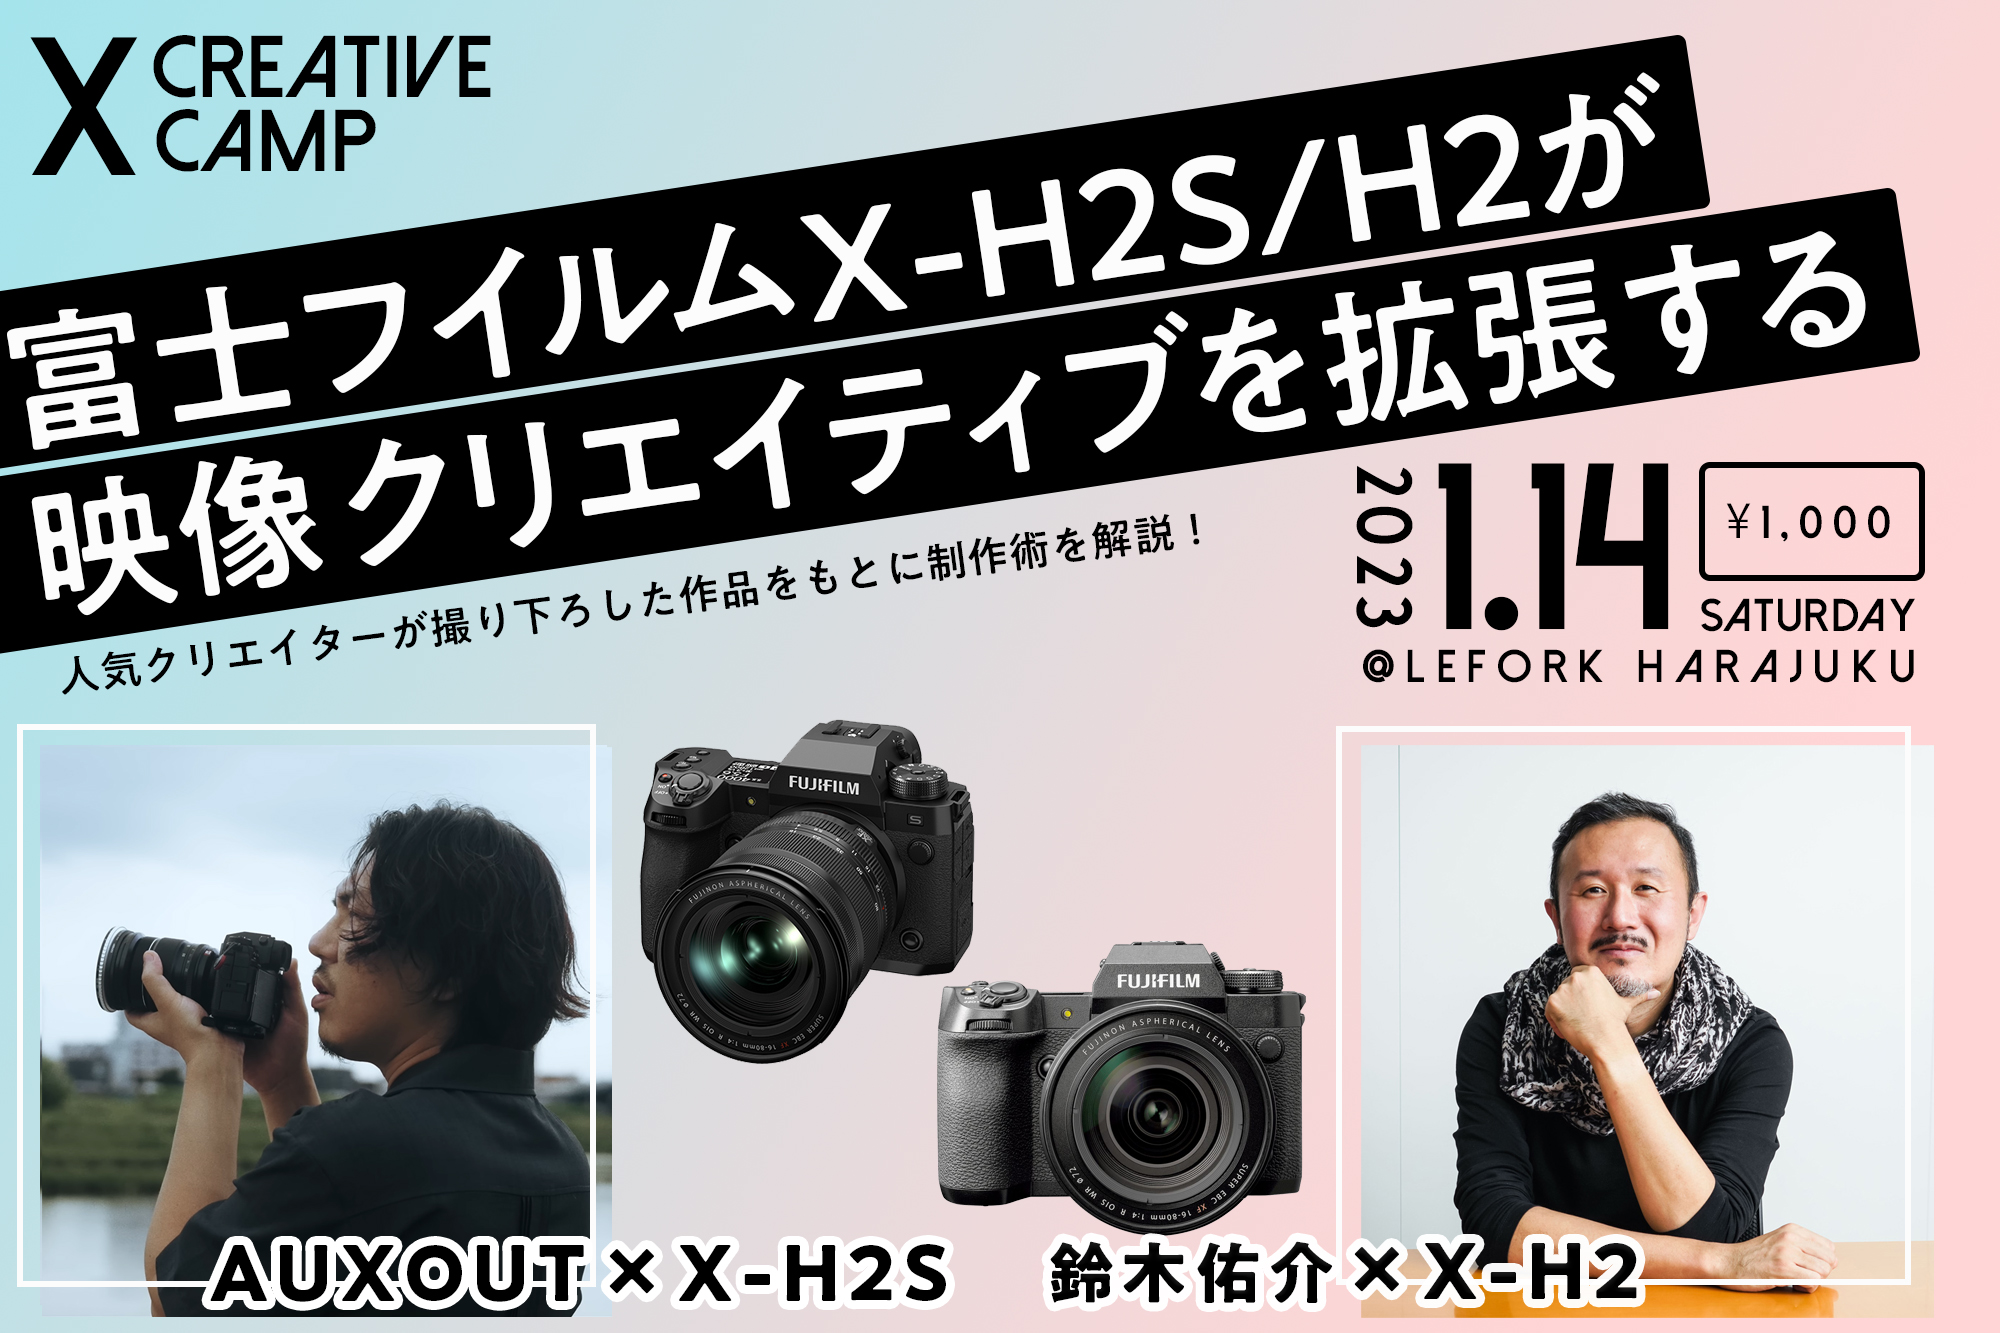 富士フイルムPresents“X CREATIVE CAMP”1月14日開催！ AUXOUTさん